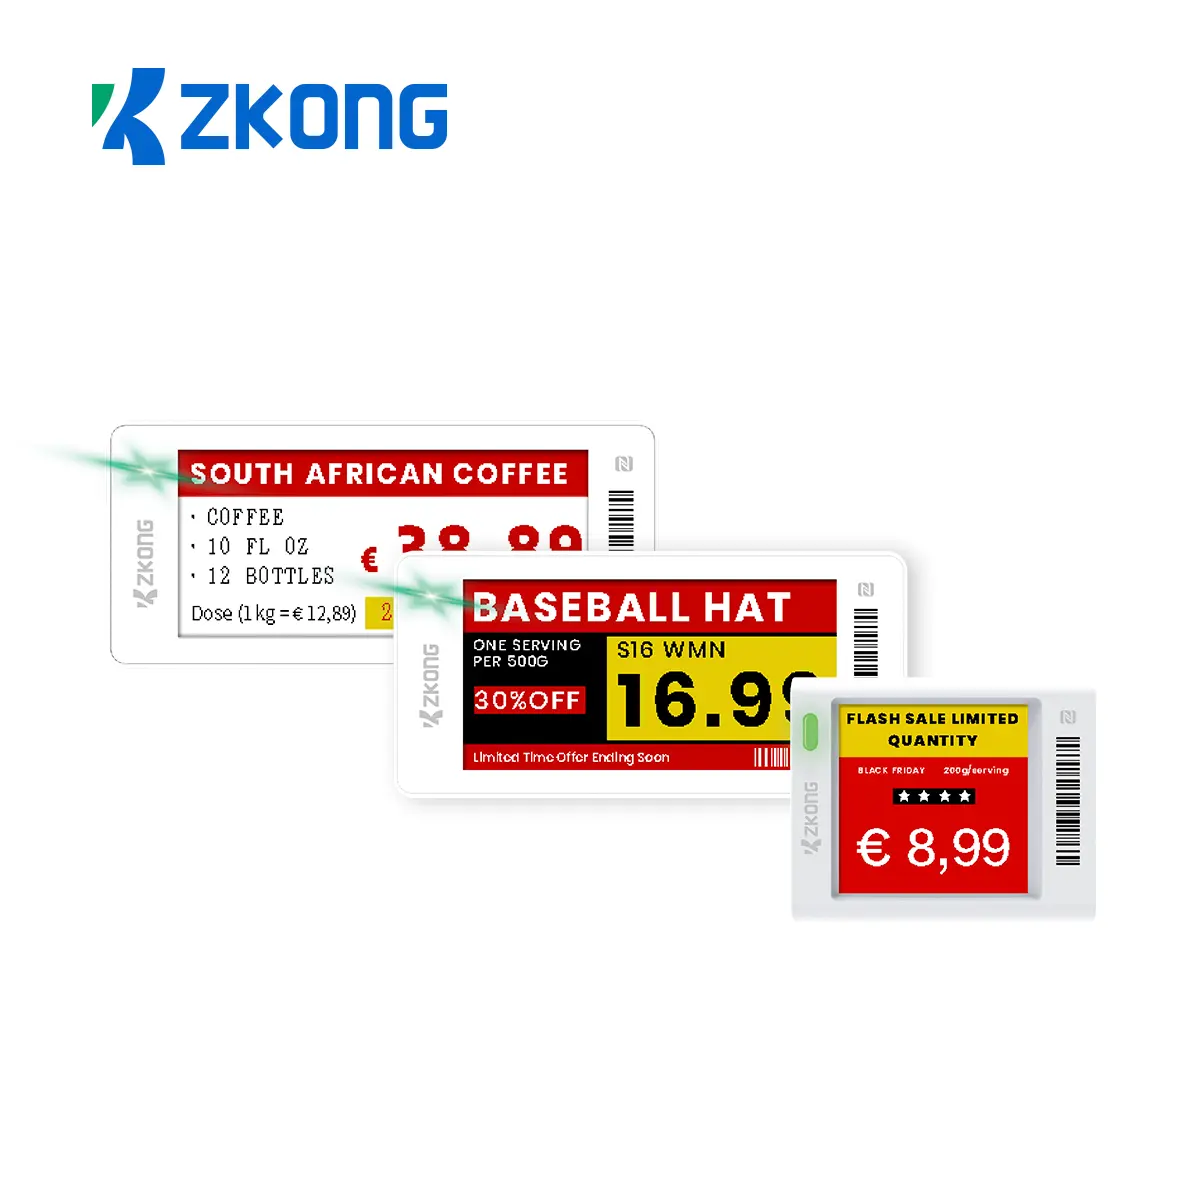 Etichetta elettronica del cartellino del prezzo di Zkong etichetta al dettaglio etichette digitali del prezzo al dettaglio etichette dello scaffale della drogheria